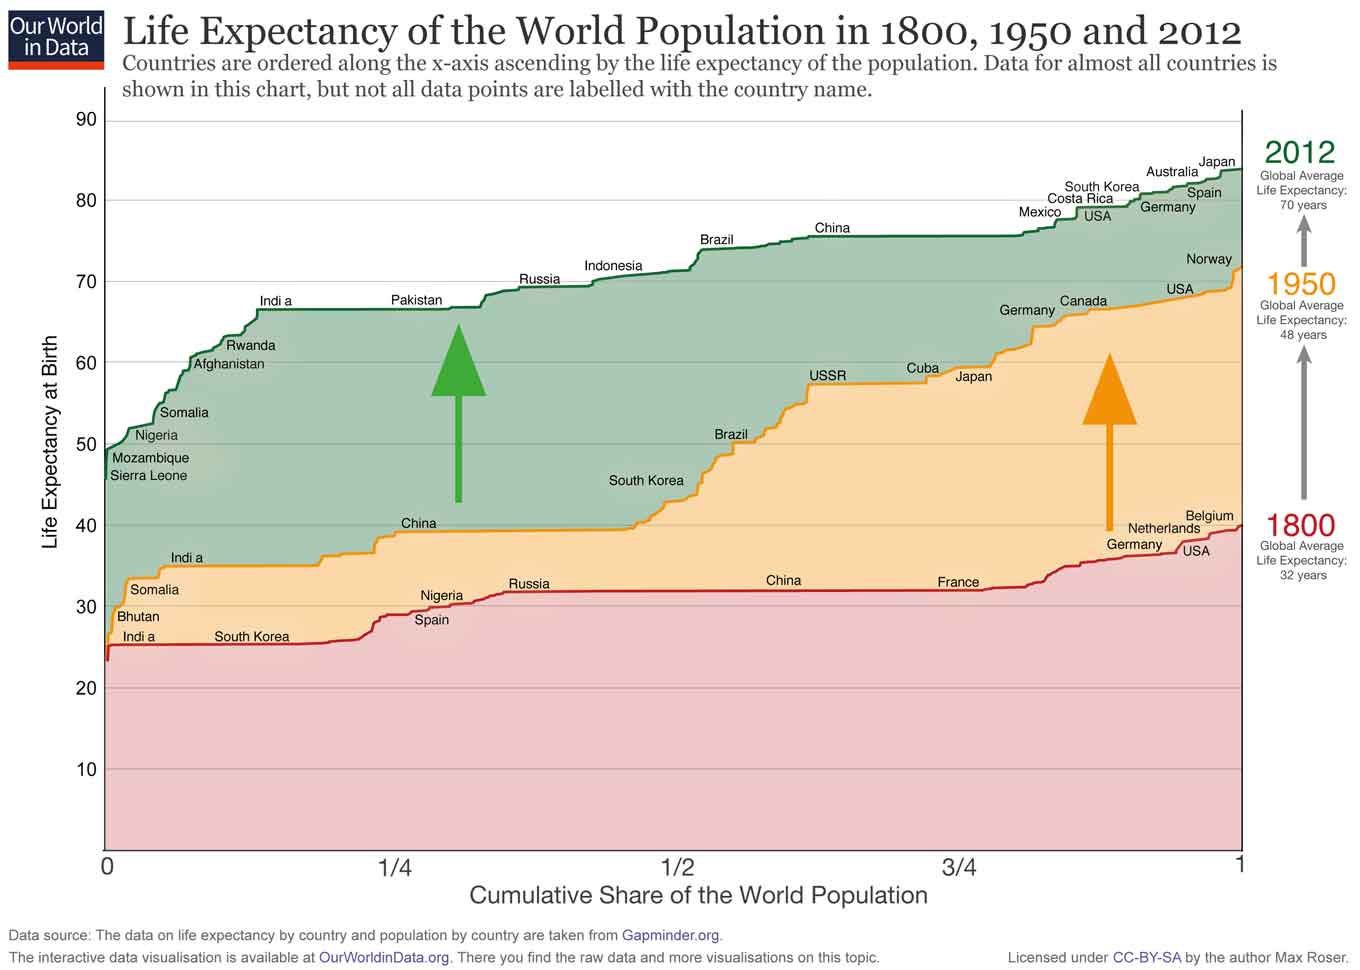 Op de x-as vind je het cumulatieve aandeel van de wereldbevolking. En alle landen van de wereld zijn geordend langs de x-as oplopend door de levensverwachting van de bevolking. Op de y-as zie je de levensverwachting van elk land.  Voor 1800 (rode lijn) zie je dat de landen links – India en ook Zuid-Korea – een levensverwachting hebben rond de 25. Helemaal rechts zie je dat in 1800 geen enkel land een levensverwachting boven de 40 had (België had de hoogste levensverwachting met slechts 40 jaar).  In 1950 was de levensverwachting van alle landen hoger dan in 1800 en de rijkere landen in Europa en Noord-Amerika hadden een levensverwachting van meer dan 60 jaar - in de loop van modernisering en industrialisatie verbeterde de gezondheid van de bevolking dramatisch. Maar de helft van de wereldbevolking – kijk naar India en China – boekte weinig vooruitgang. Daarom was de wereld in 1950 zeer ongelijk in levensstandaard – duidelijk verdeeld tussen ontwikkelde landen en ontwikkelingslanden.